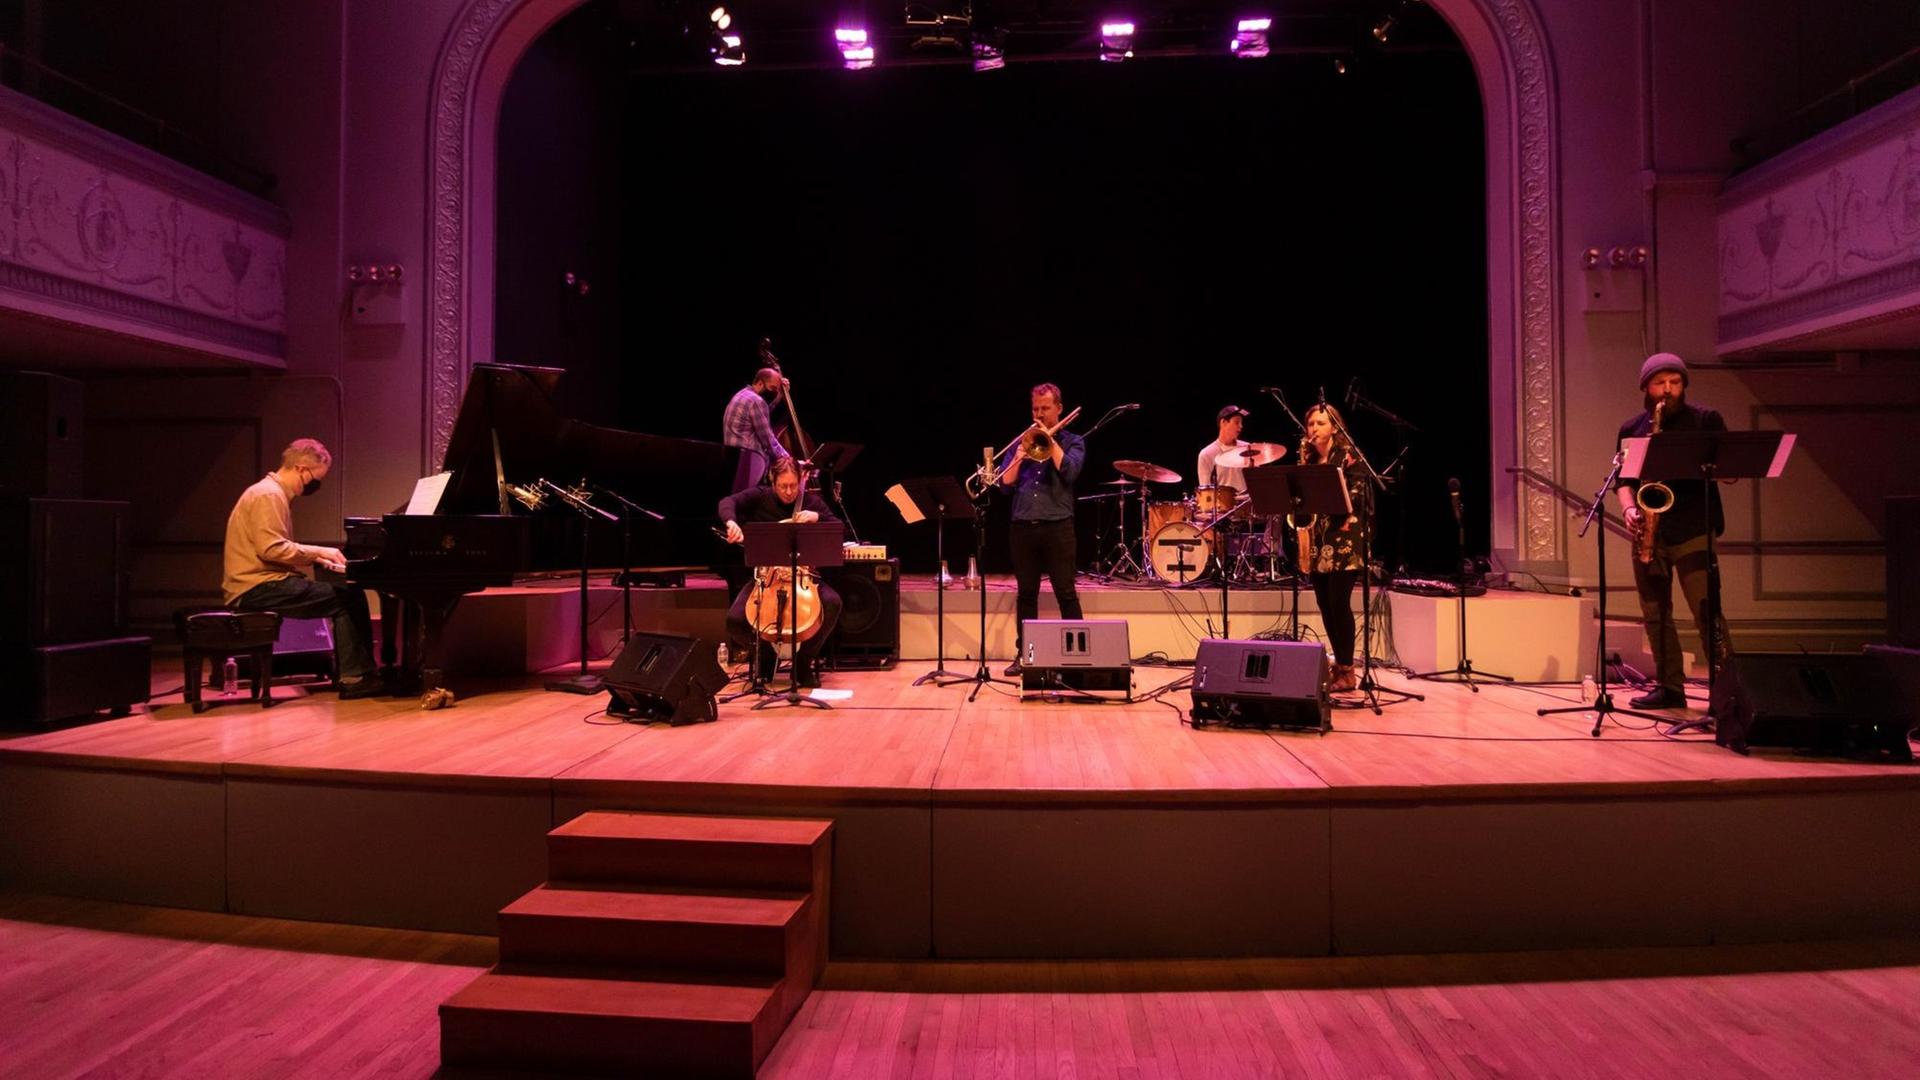 Auf einer in buntes Licht getauchten Bühne spielen eine Musikerin und sechs Musiker vor einem leeren Auditorium.